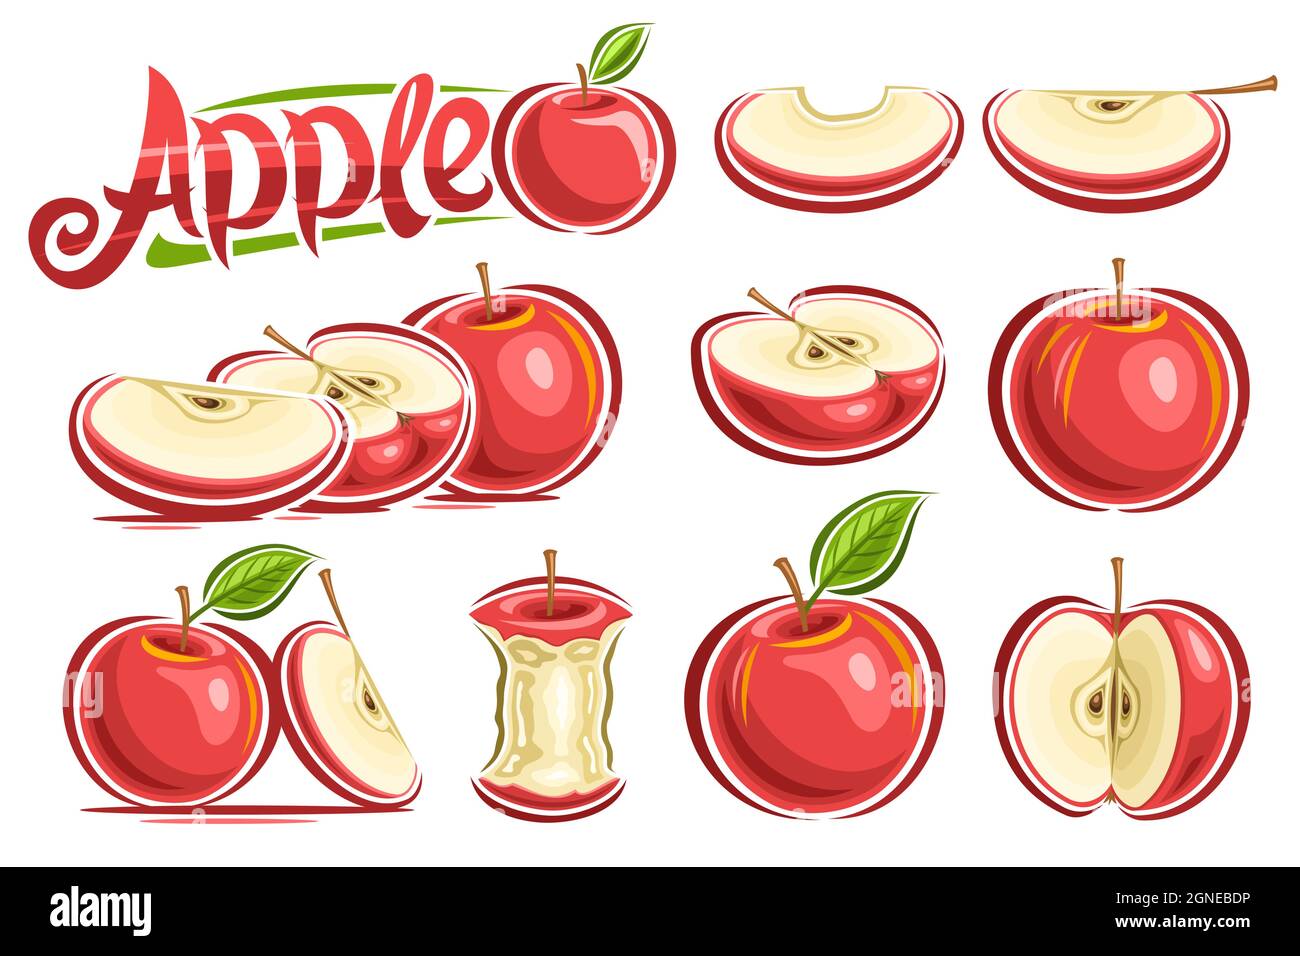 Vector Set von roten Äpfeln, Lot Sammlung von ausgeschnittenen Stillleben Kompositionen, ganze und in Scheiben geschnittene natürliche Äpfel mit grünen Blättern und Stielen auf weißem Rücken Stock Vektor